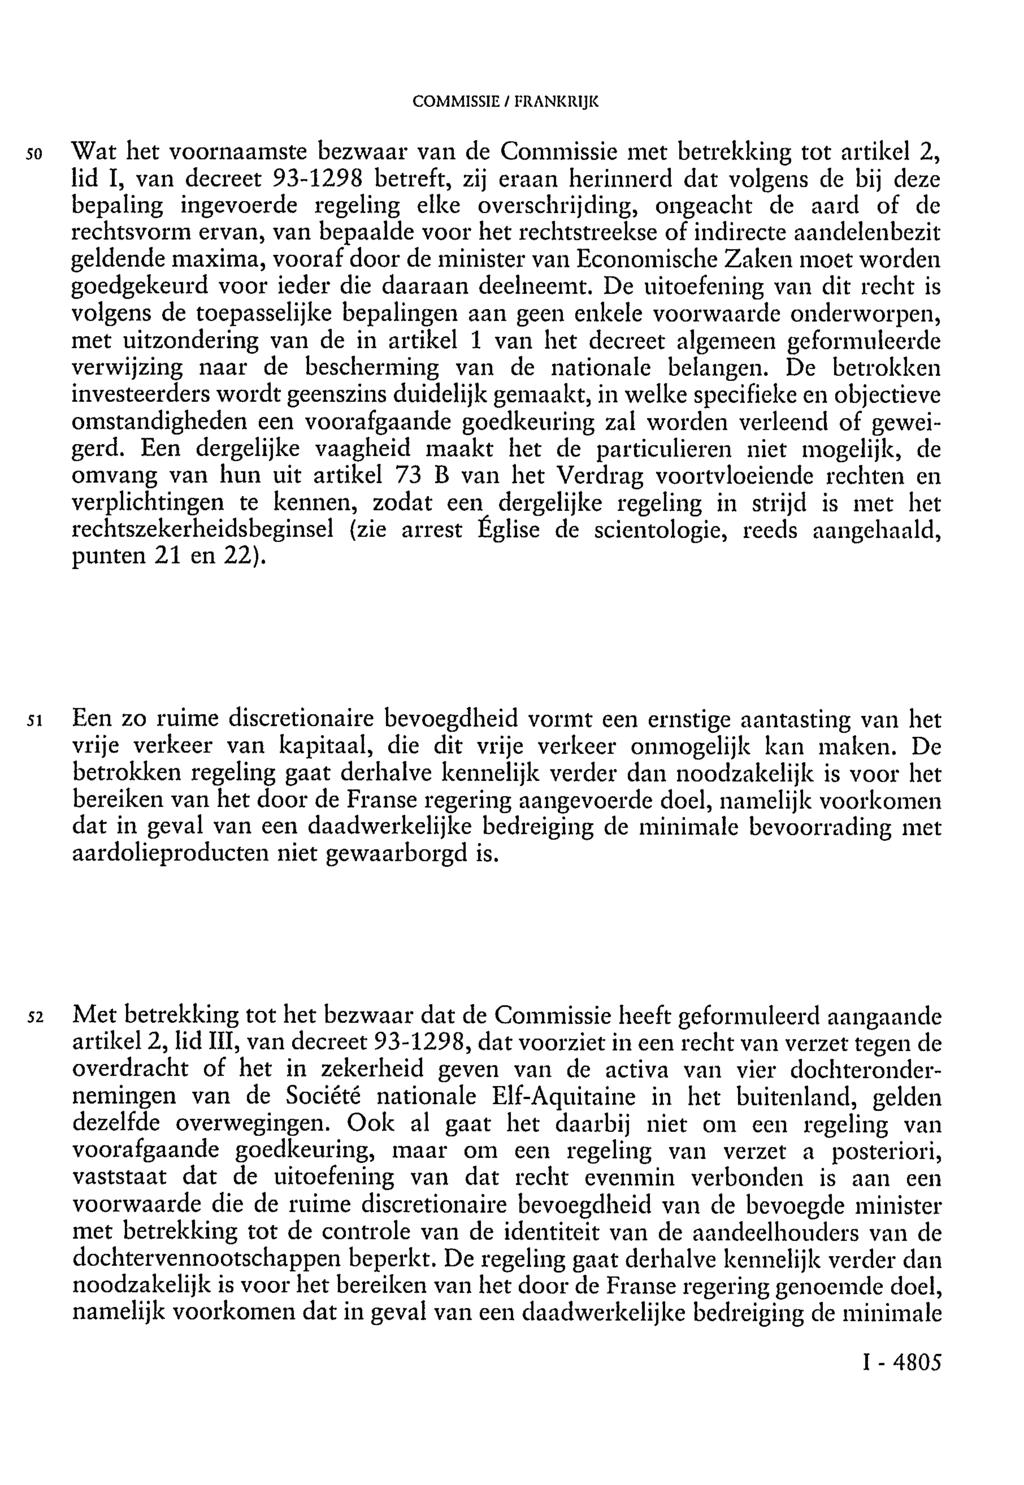 COMMISSIE / FRANKRIJK 50 Wat het voornaamste bezwaar van de Commissie met betrekking tot artikel 2, lid I, van decreet 93-1298 betreft, zij eraan herinnerd dat volgens de bij deze bepaling ingevoerde